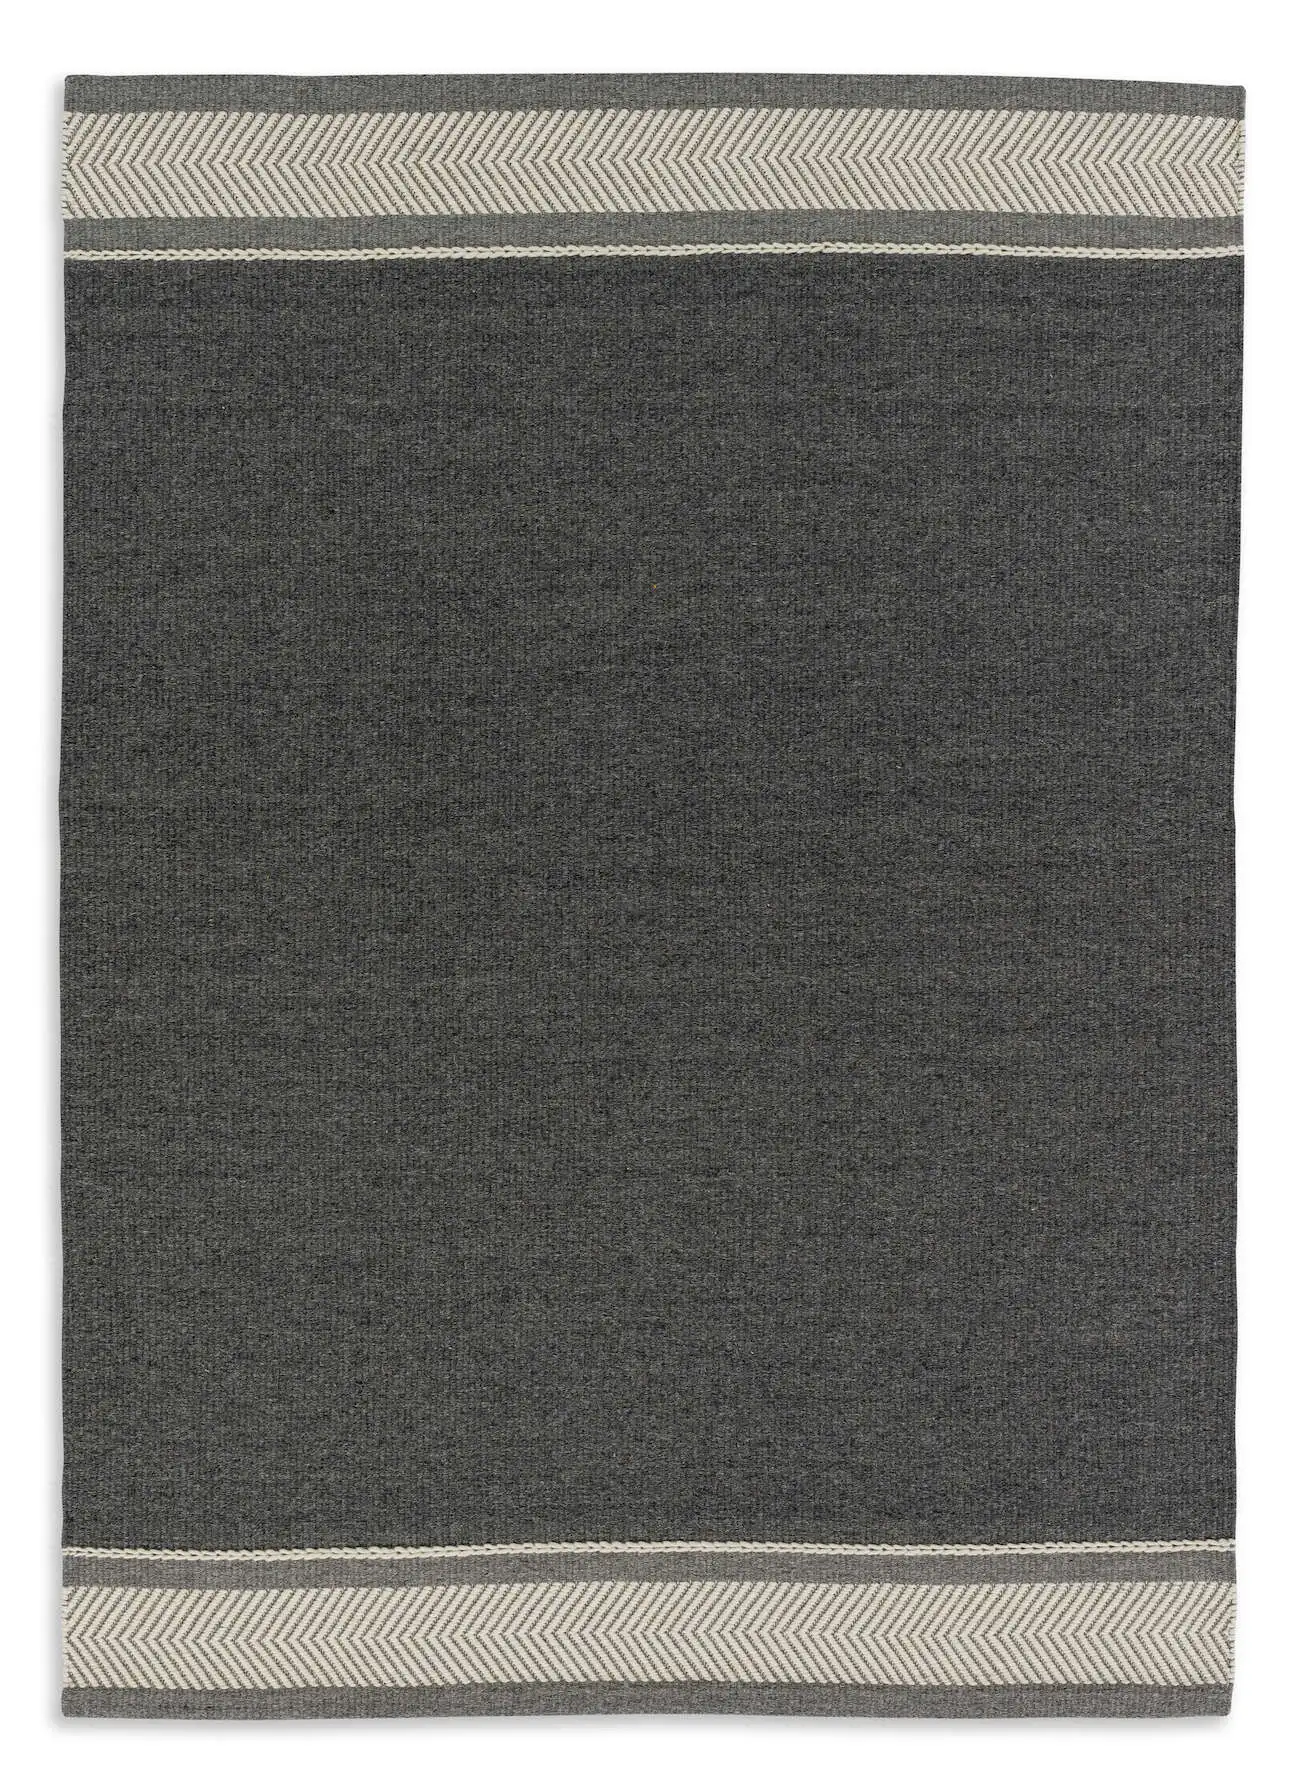 SCHÖNER WOHNEN-Kollektion Teppich Botana 6021-190-041